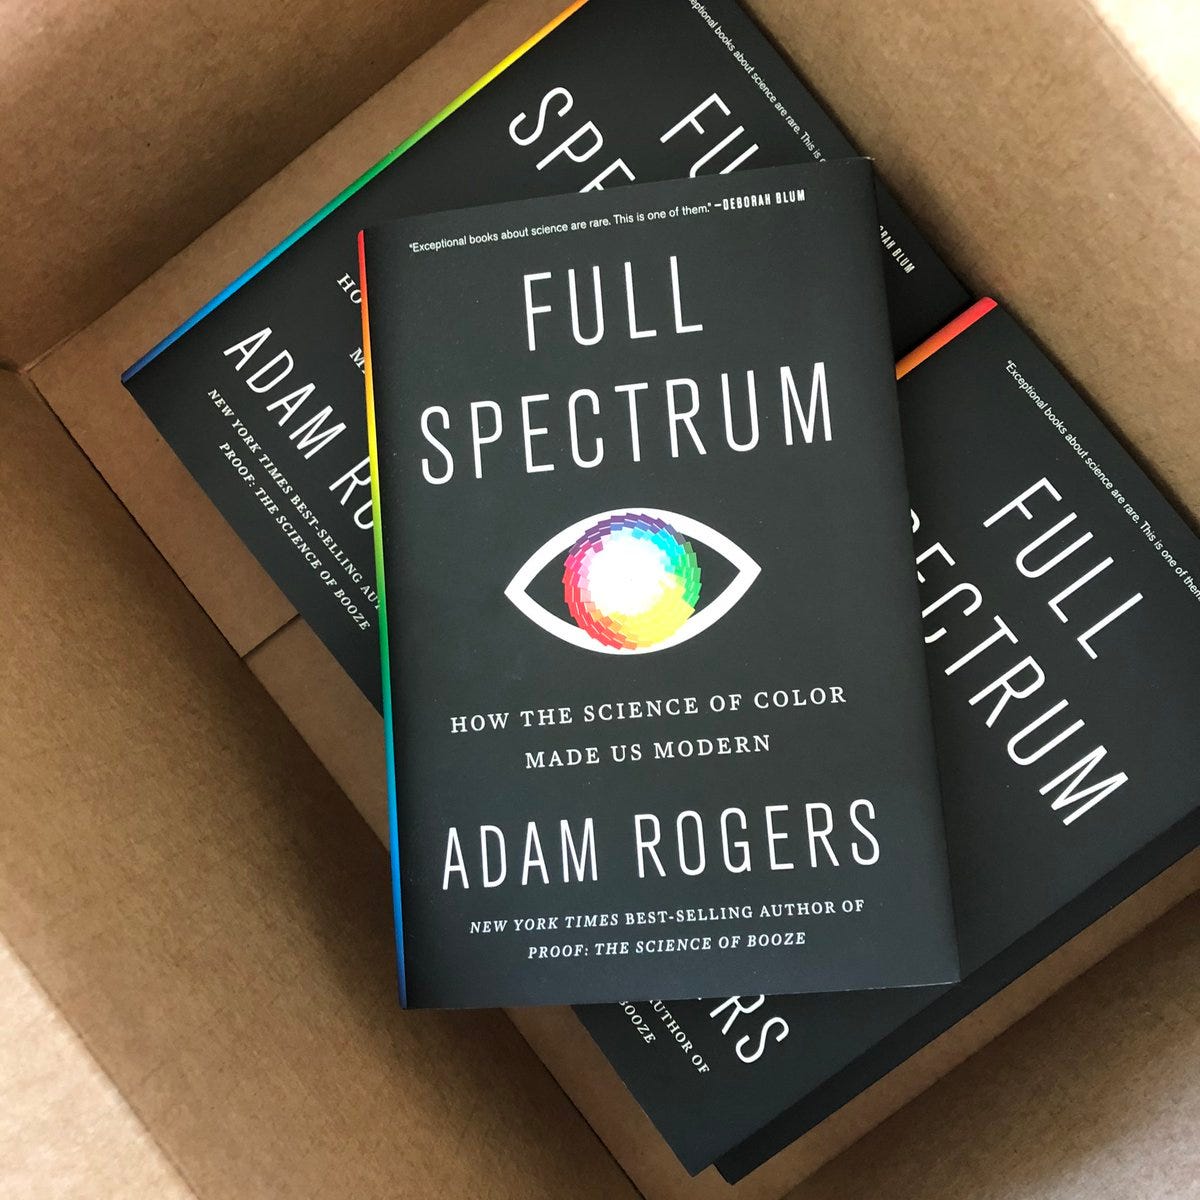 foto van een doos waarin drie exemplaren van het boek Full Spectrum liggen van Adam Rogers. 